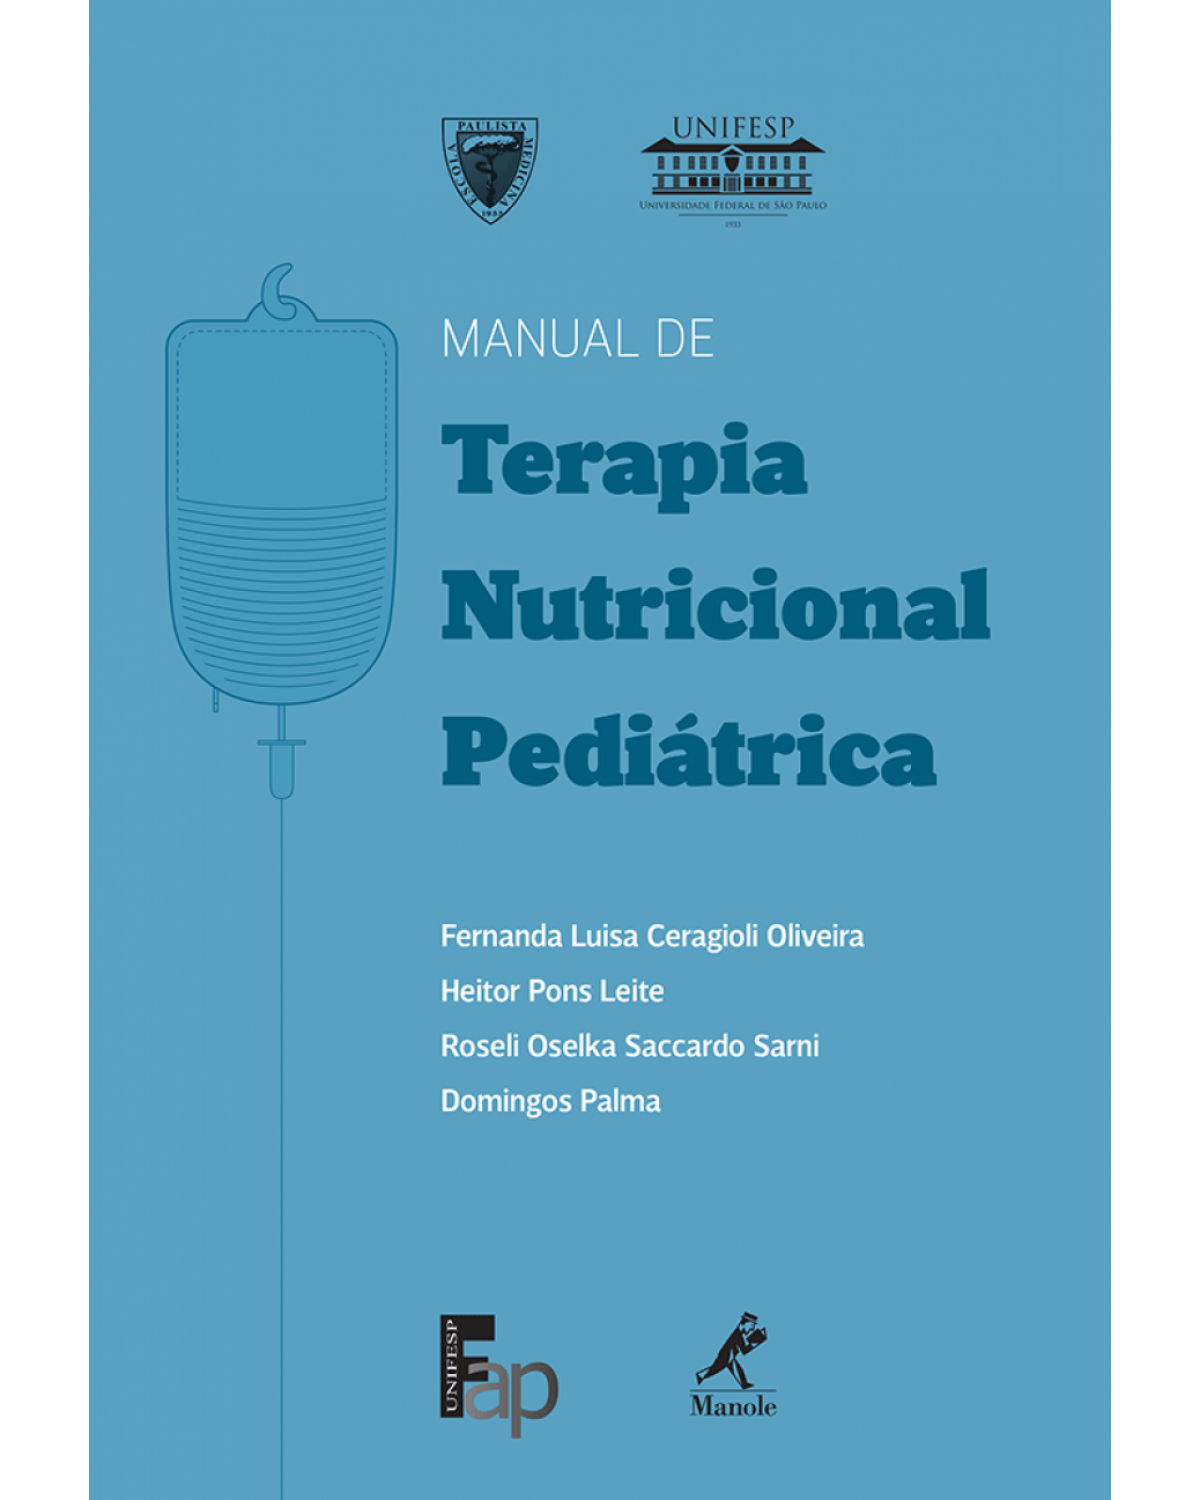 Manual de terapia nutricional pediátrica - 1ª Edição | 2014